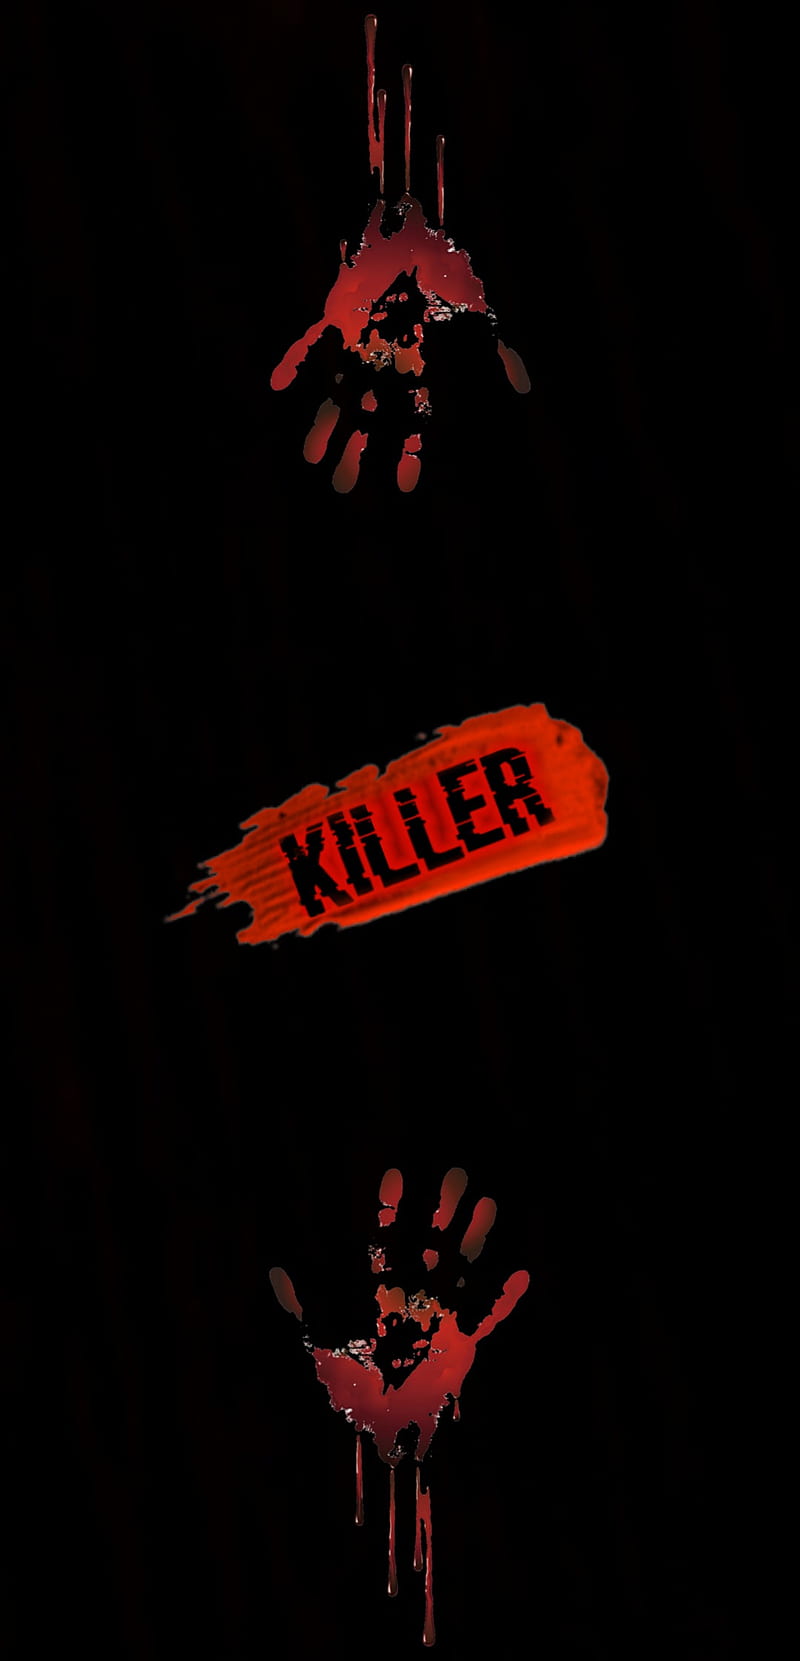 Serial Killer Wallpaper 68 images